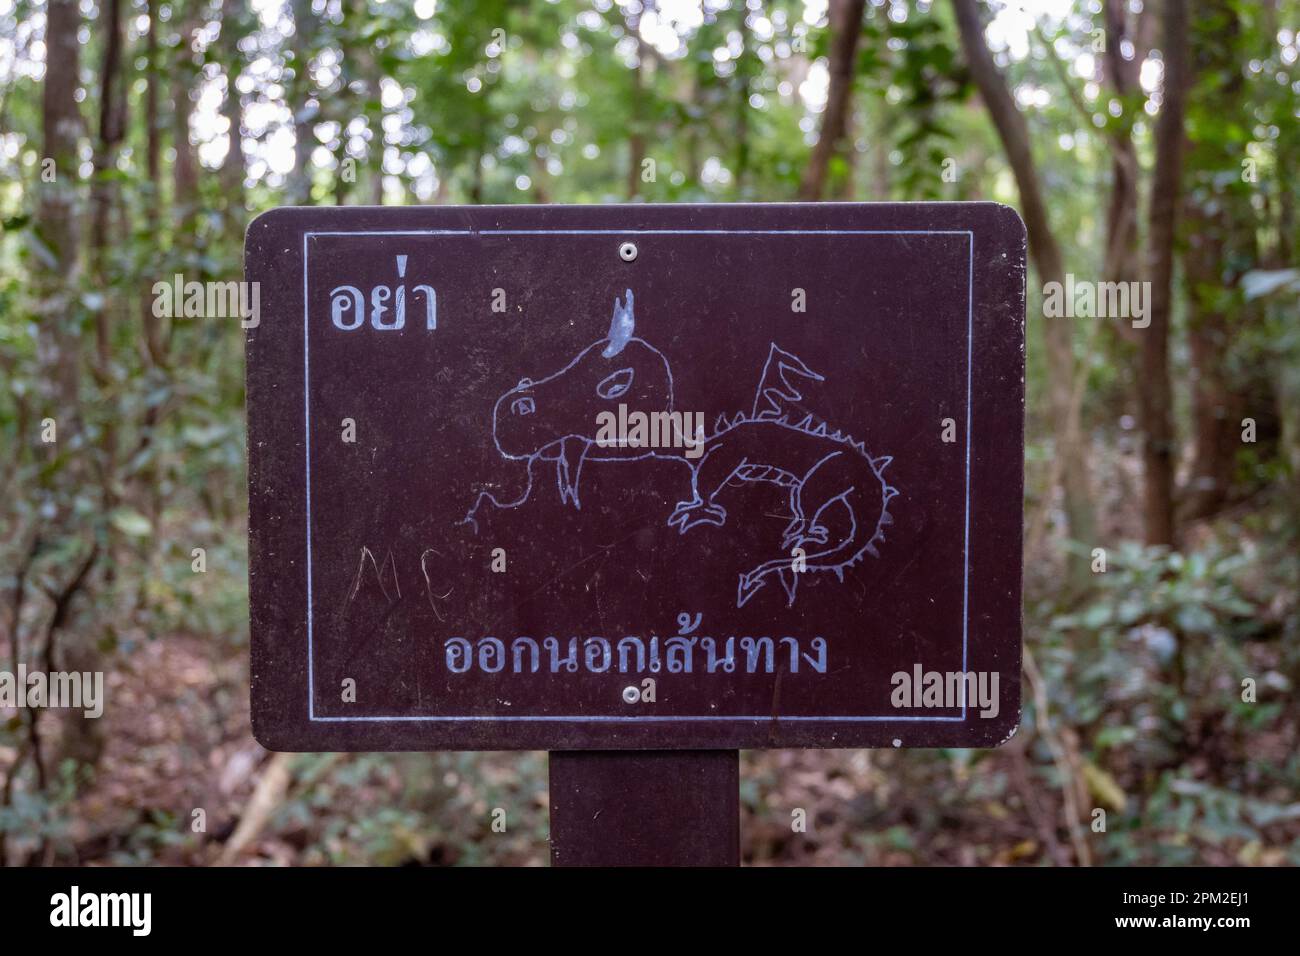 Un drôle de signe avec un dragon dessiné à la main. Sakaerat Environmental Research Station, Udom SAP, Thaïlande. Banque D'Images